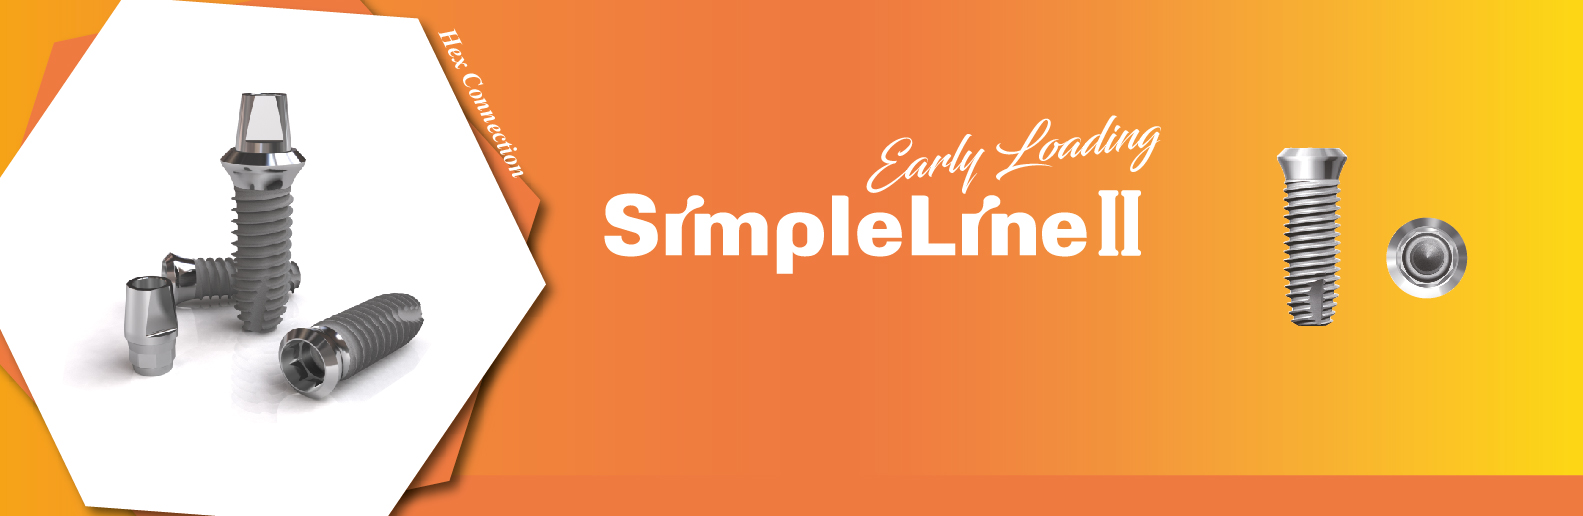 simpleline